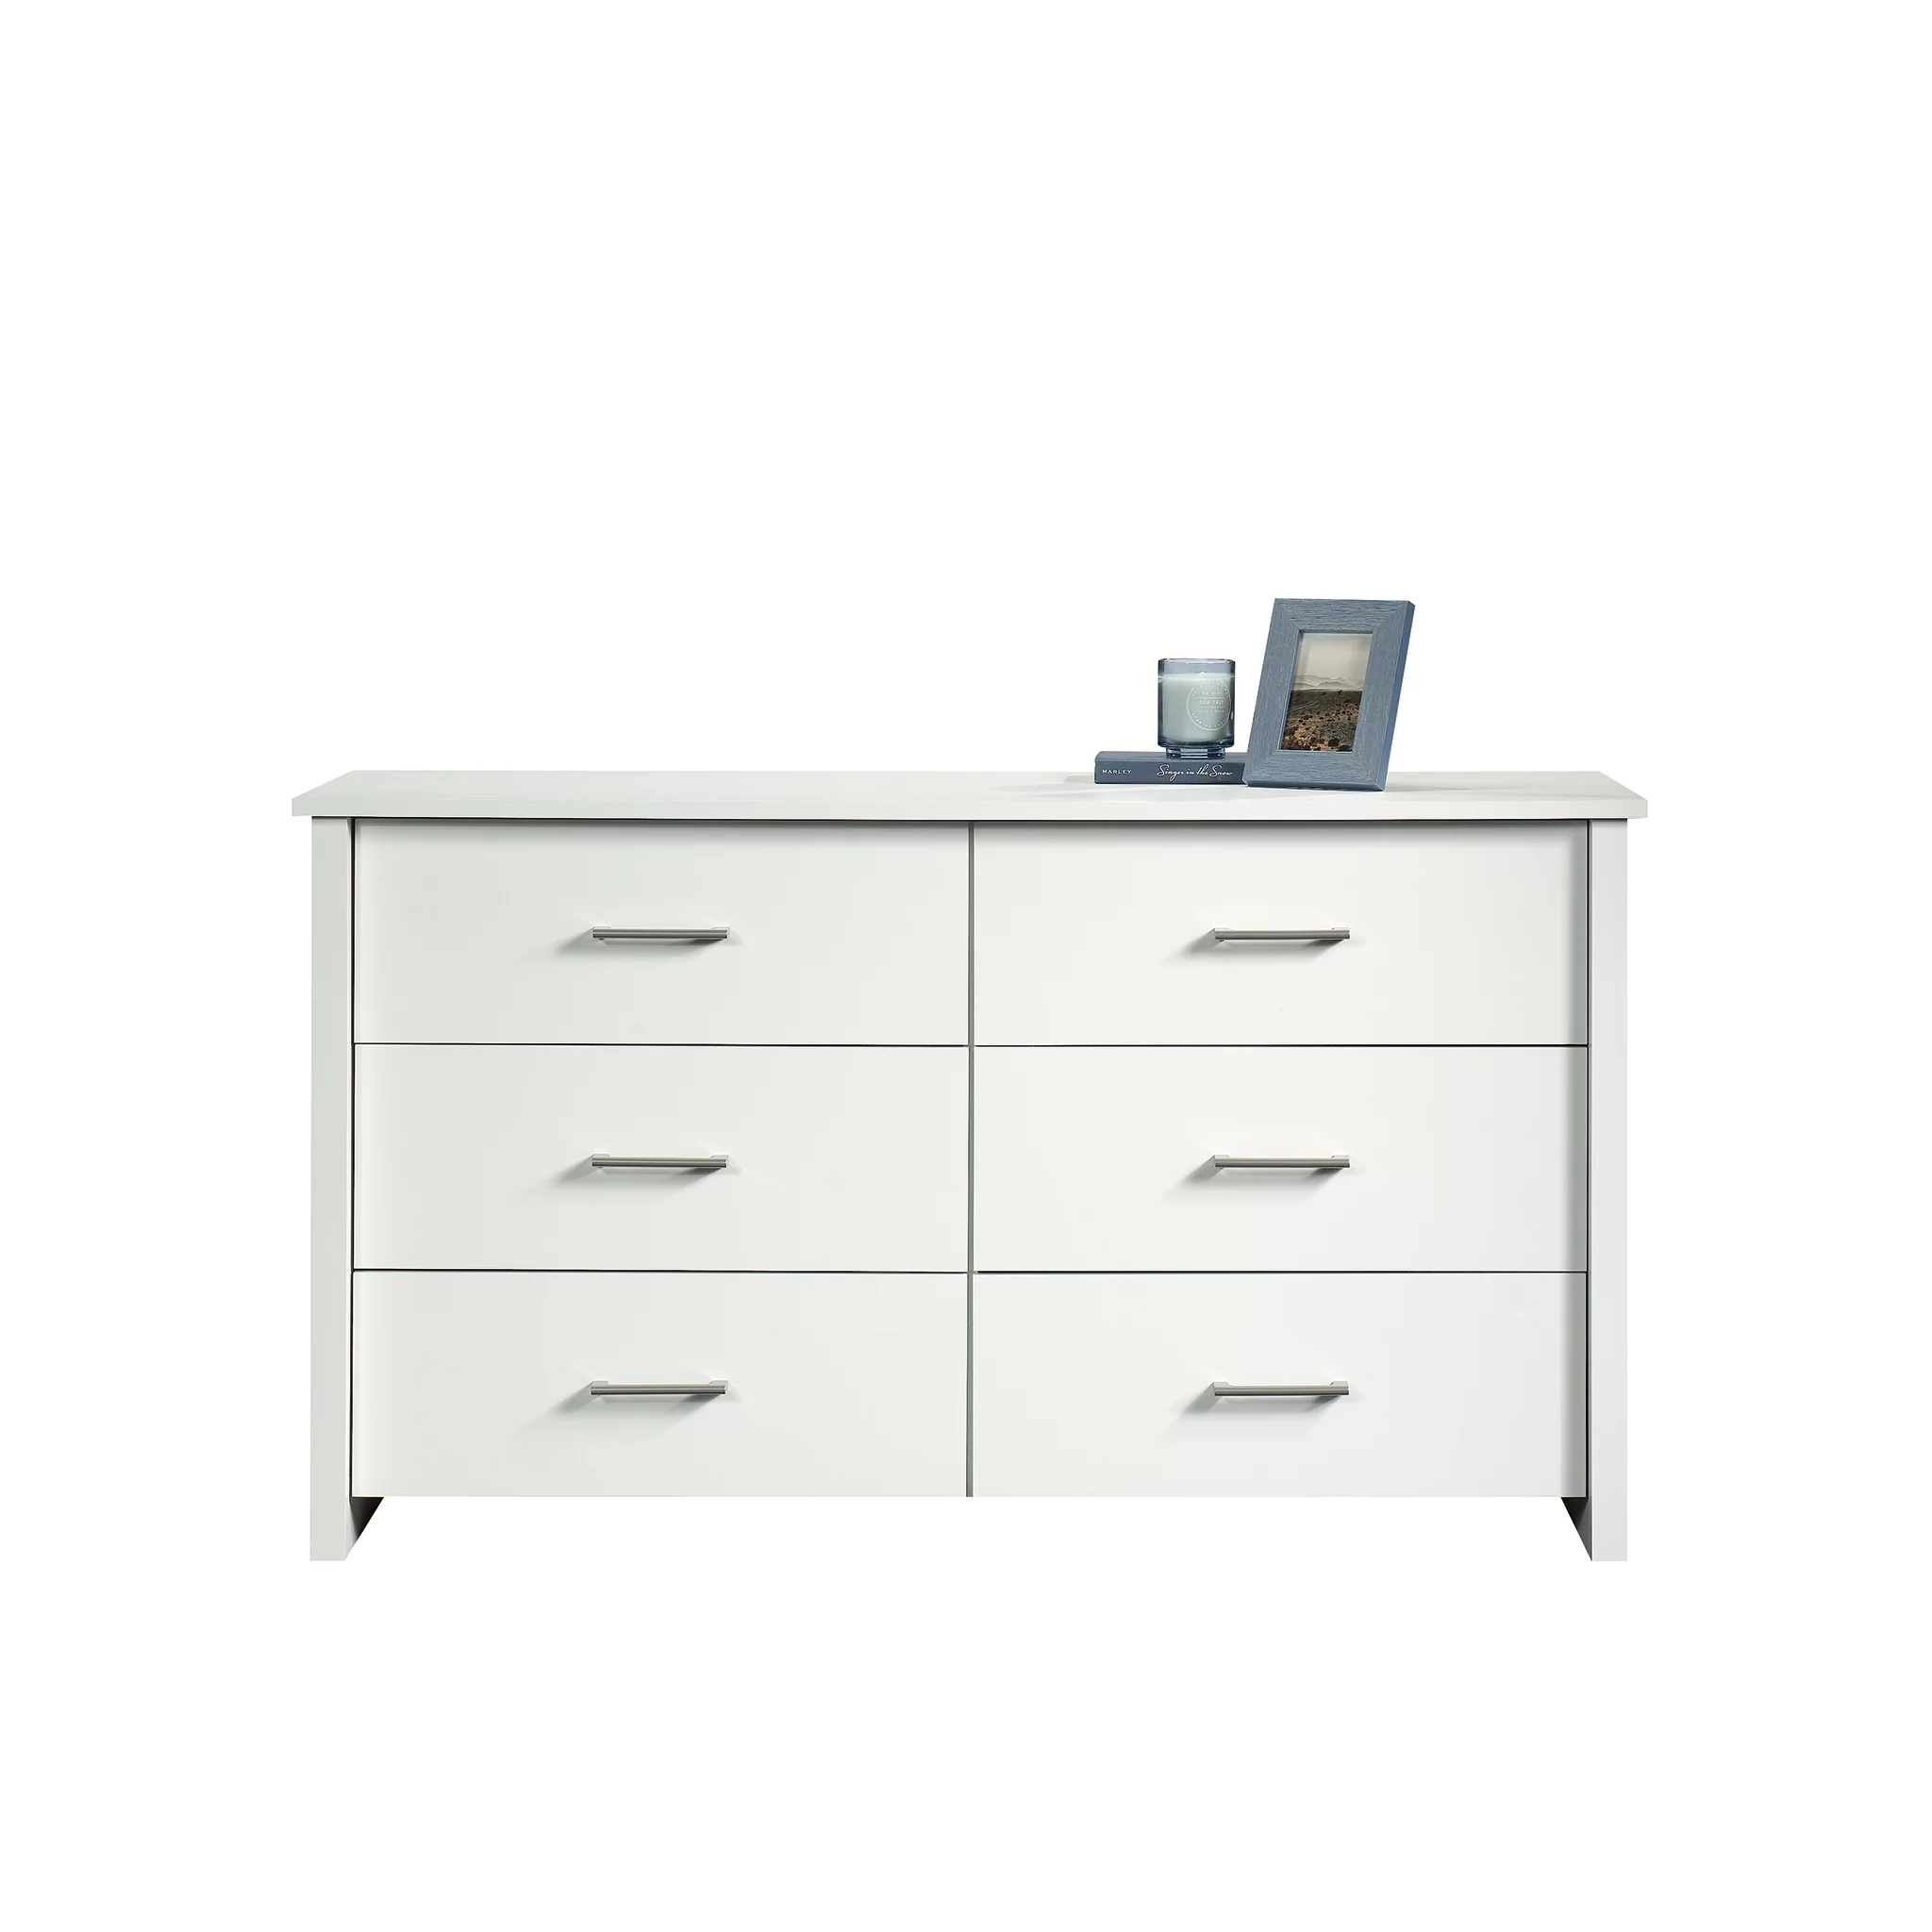 Mainstays Hillside 6-Drawer Dresser, Soft White Finish